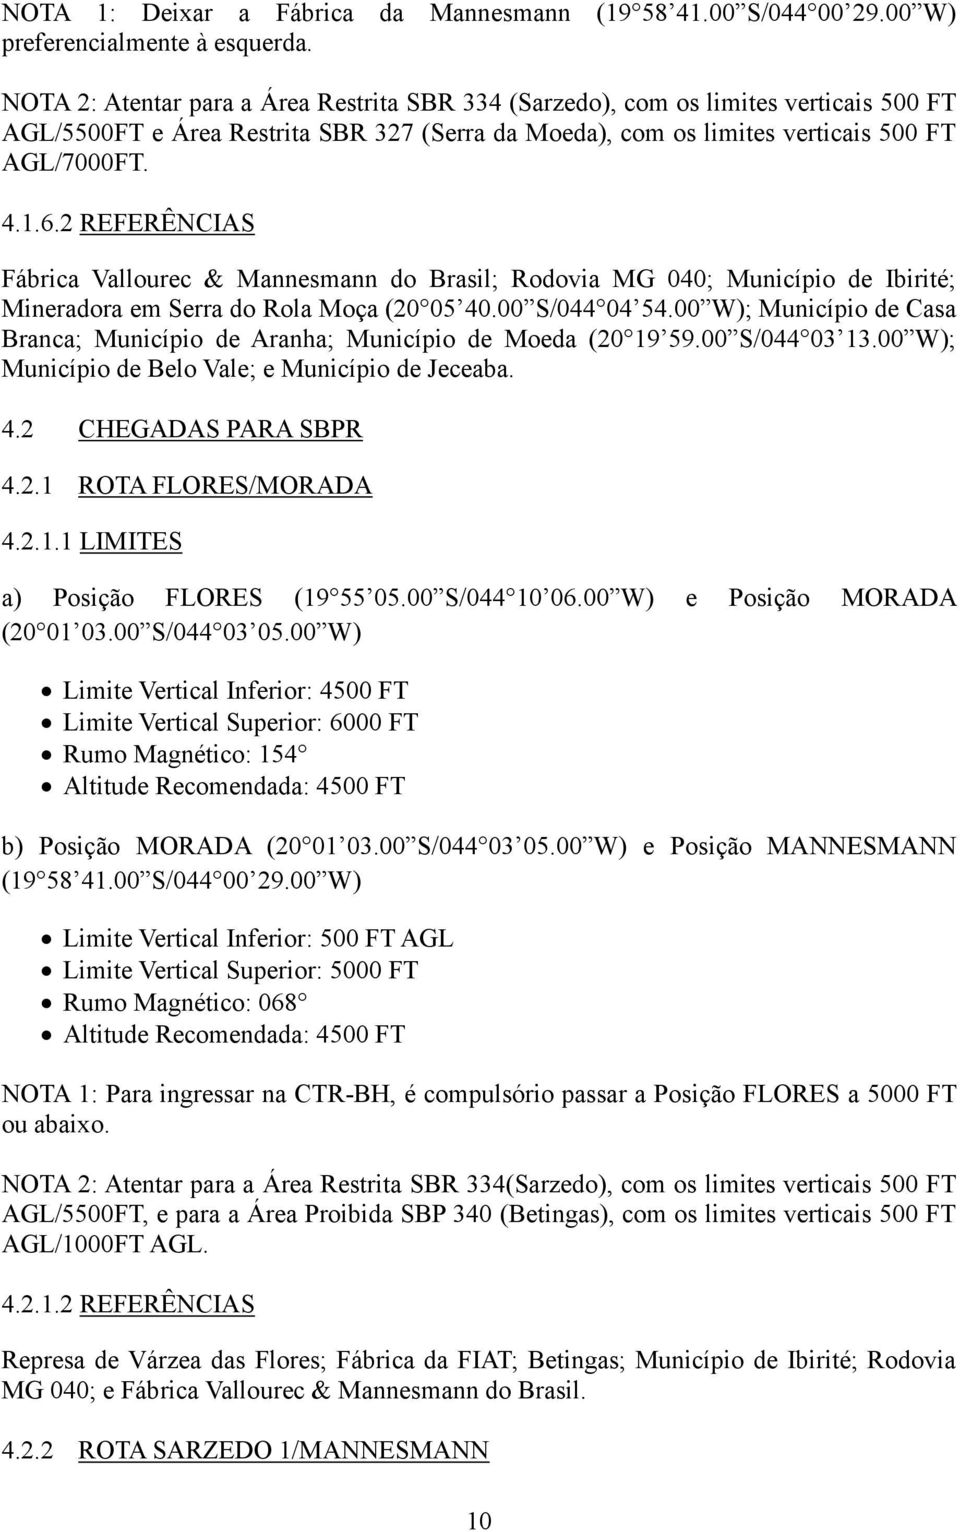 2 REFERÊNCIAS Fábrica Vallourec & Mannesmann do Brasil; Rodovia MG 040; Município de Ibirité; Mineradora em Serra do Rola Moça (20 05 40.00 S/044 04 54.